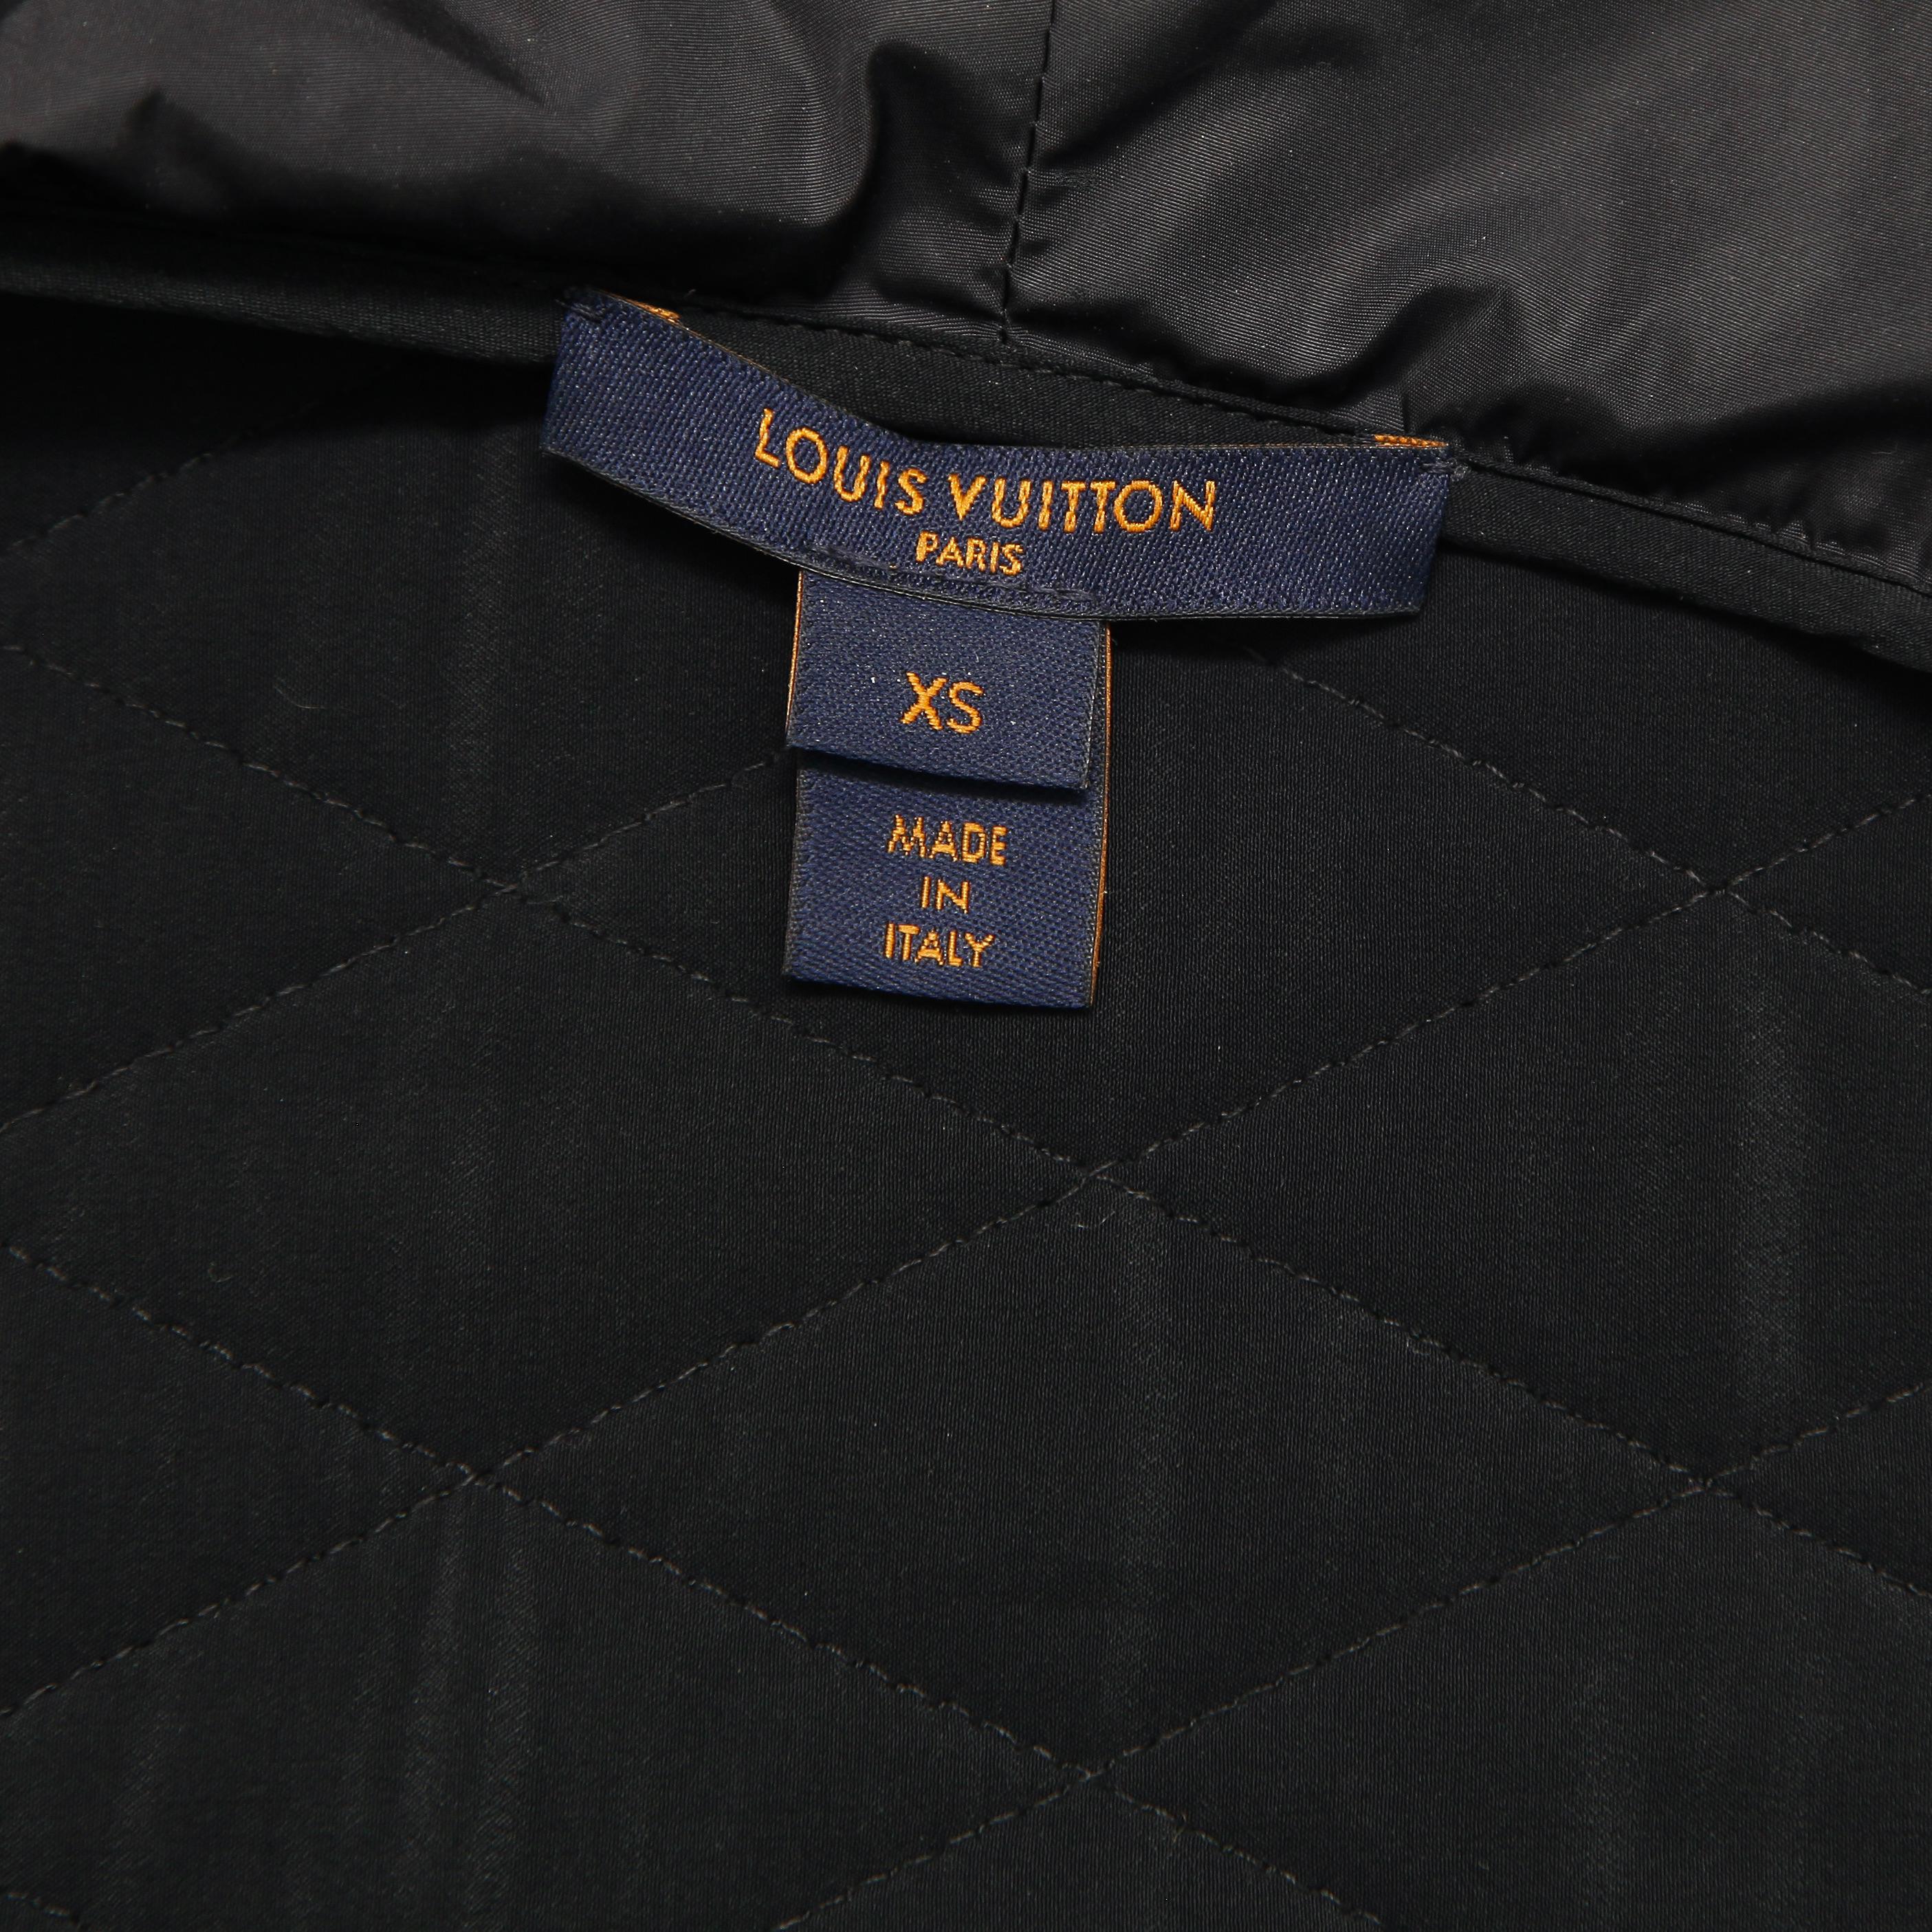 LOUIS VUITTON Hoodie Jacket Zip Coat Cardigan Zipper Silver HW Leather XS $2650 2